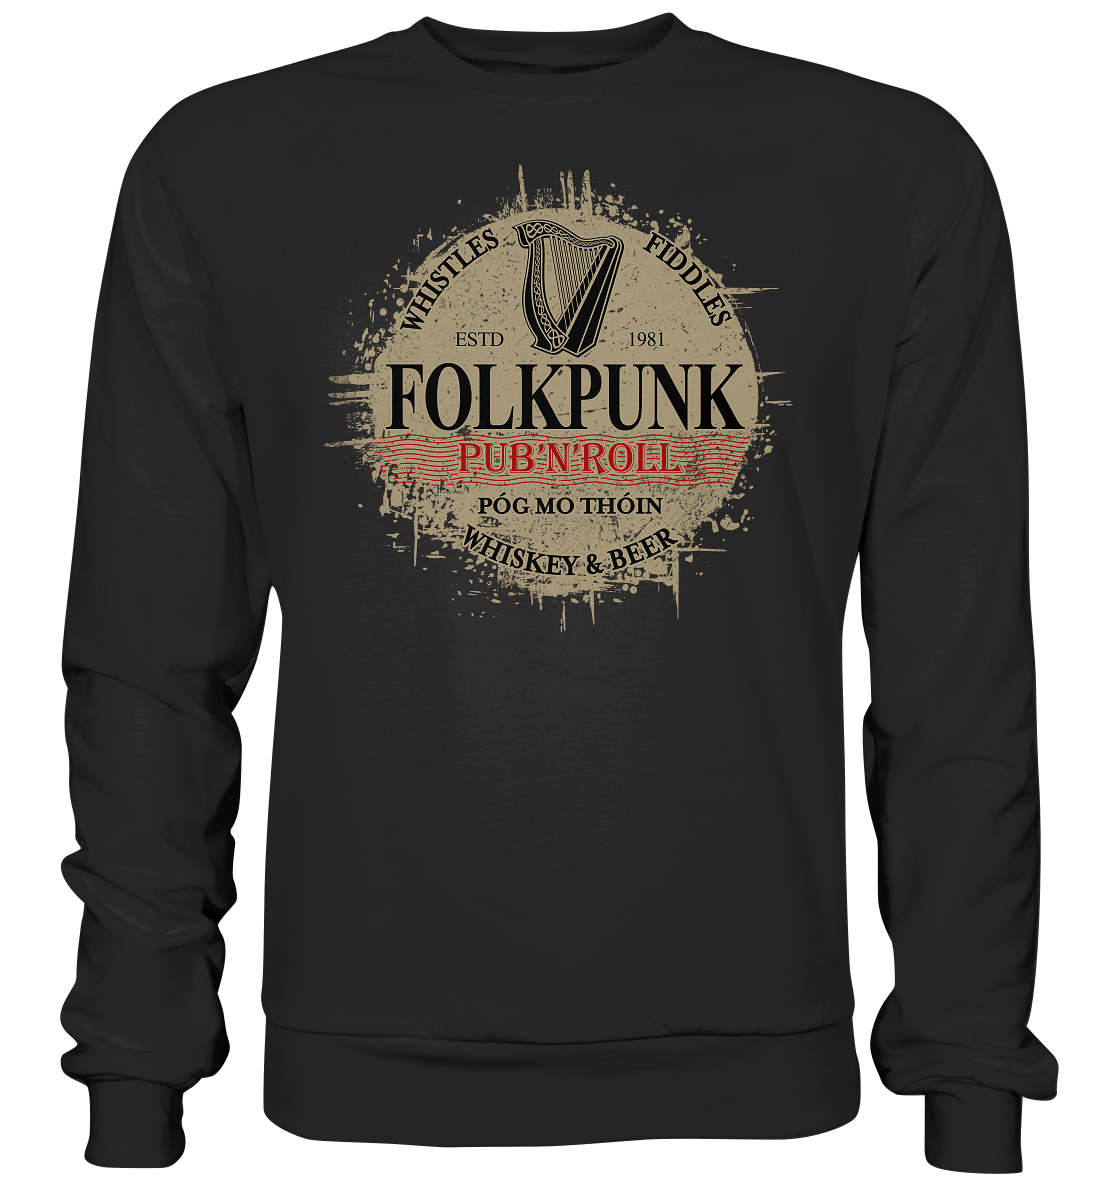 Folkpunk "Pub'n'Roll" - Basic Sweatshirt